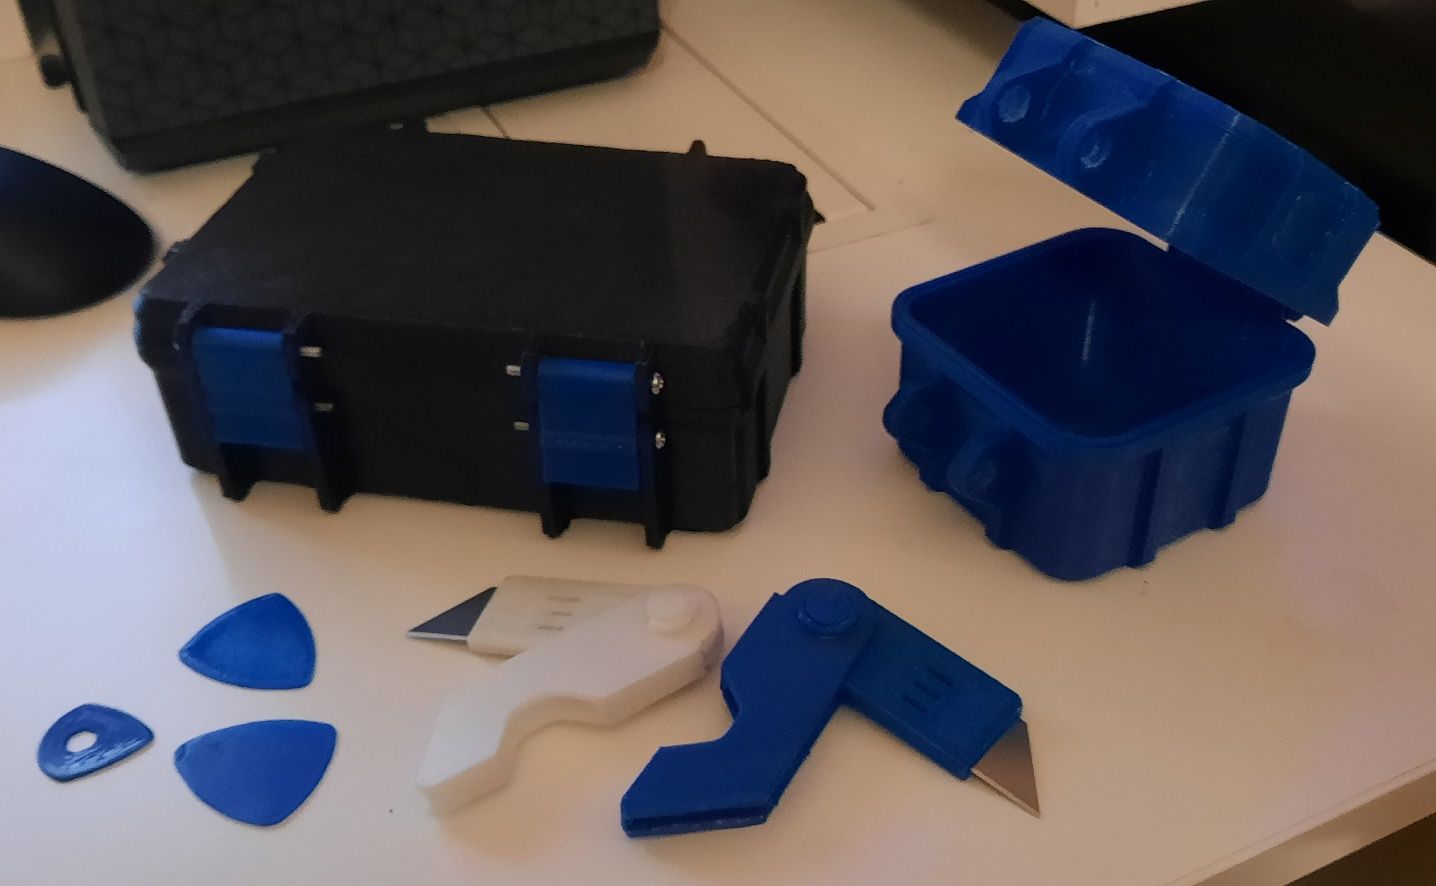 Impressão 3D PLA, PETG e ABS